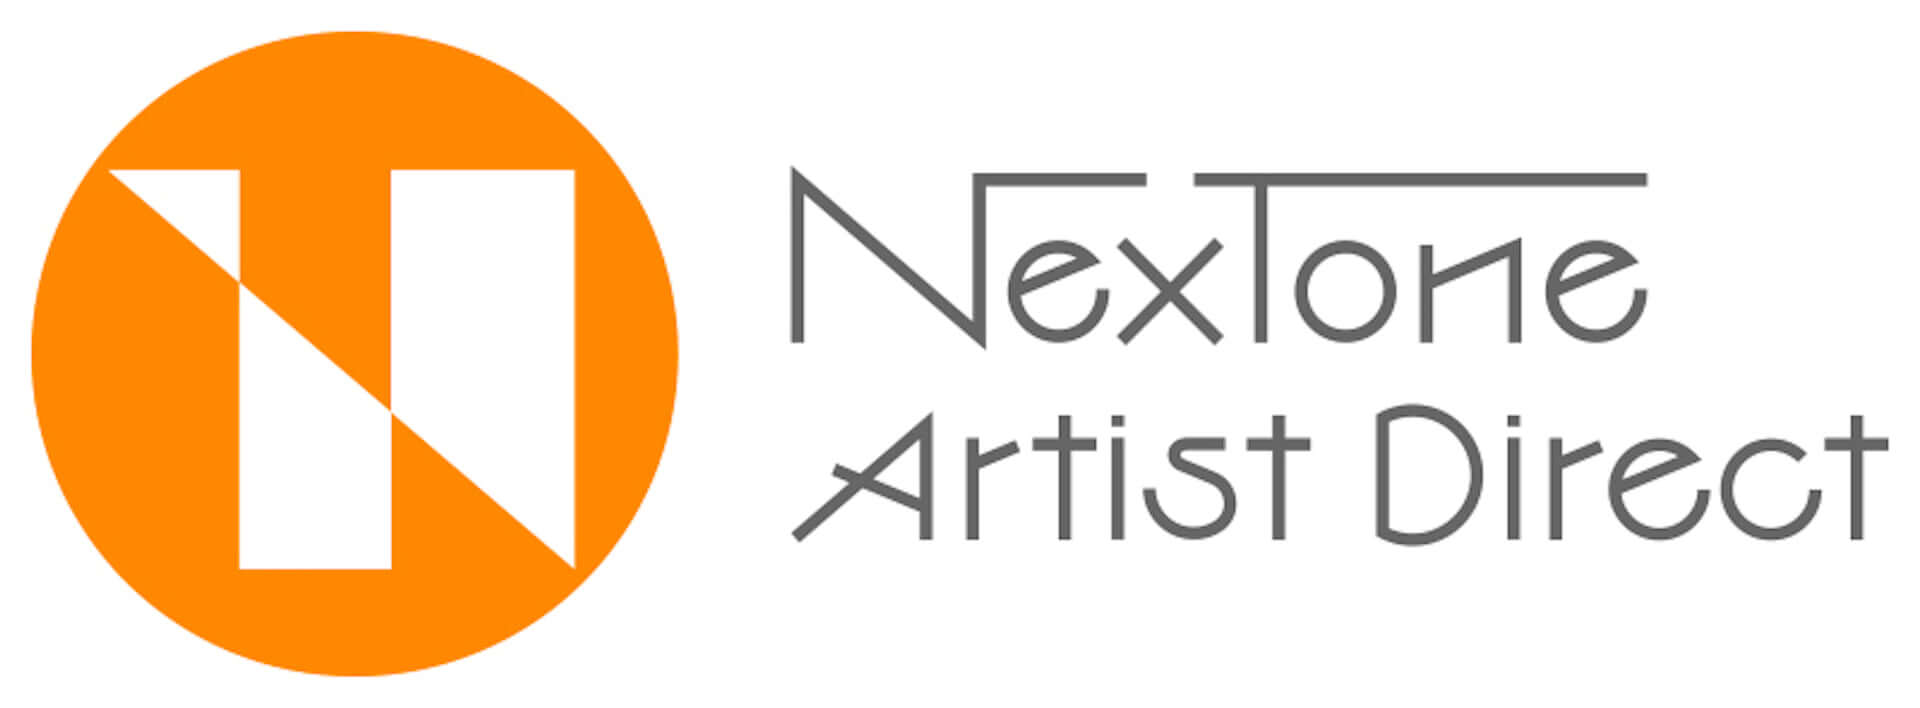 NexTone Artist Direct